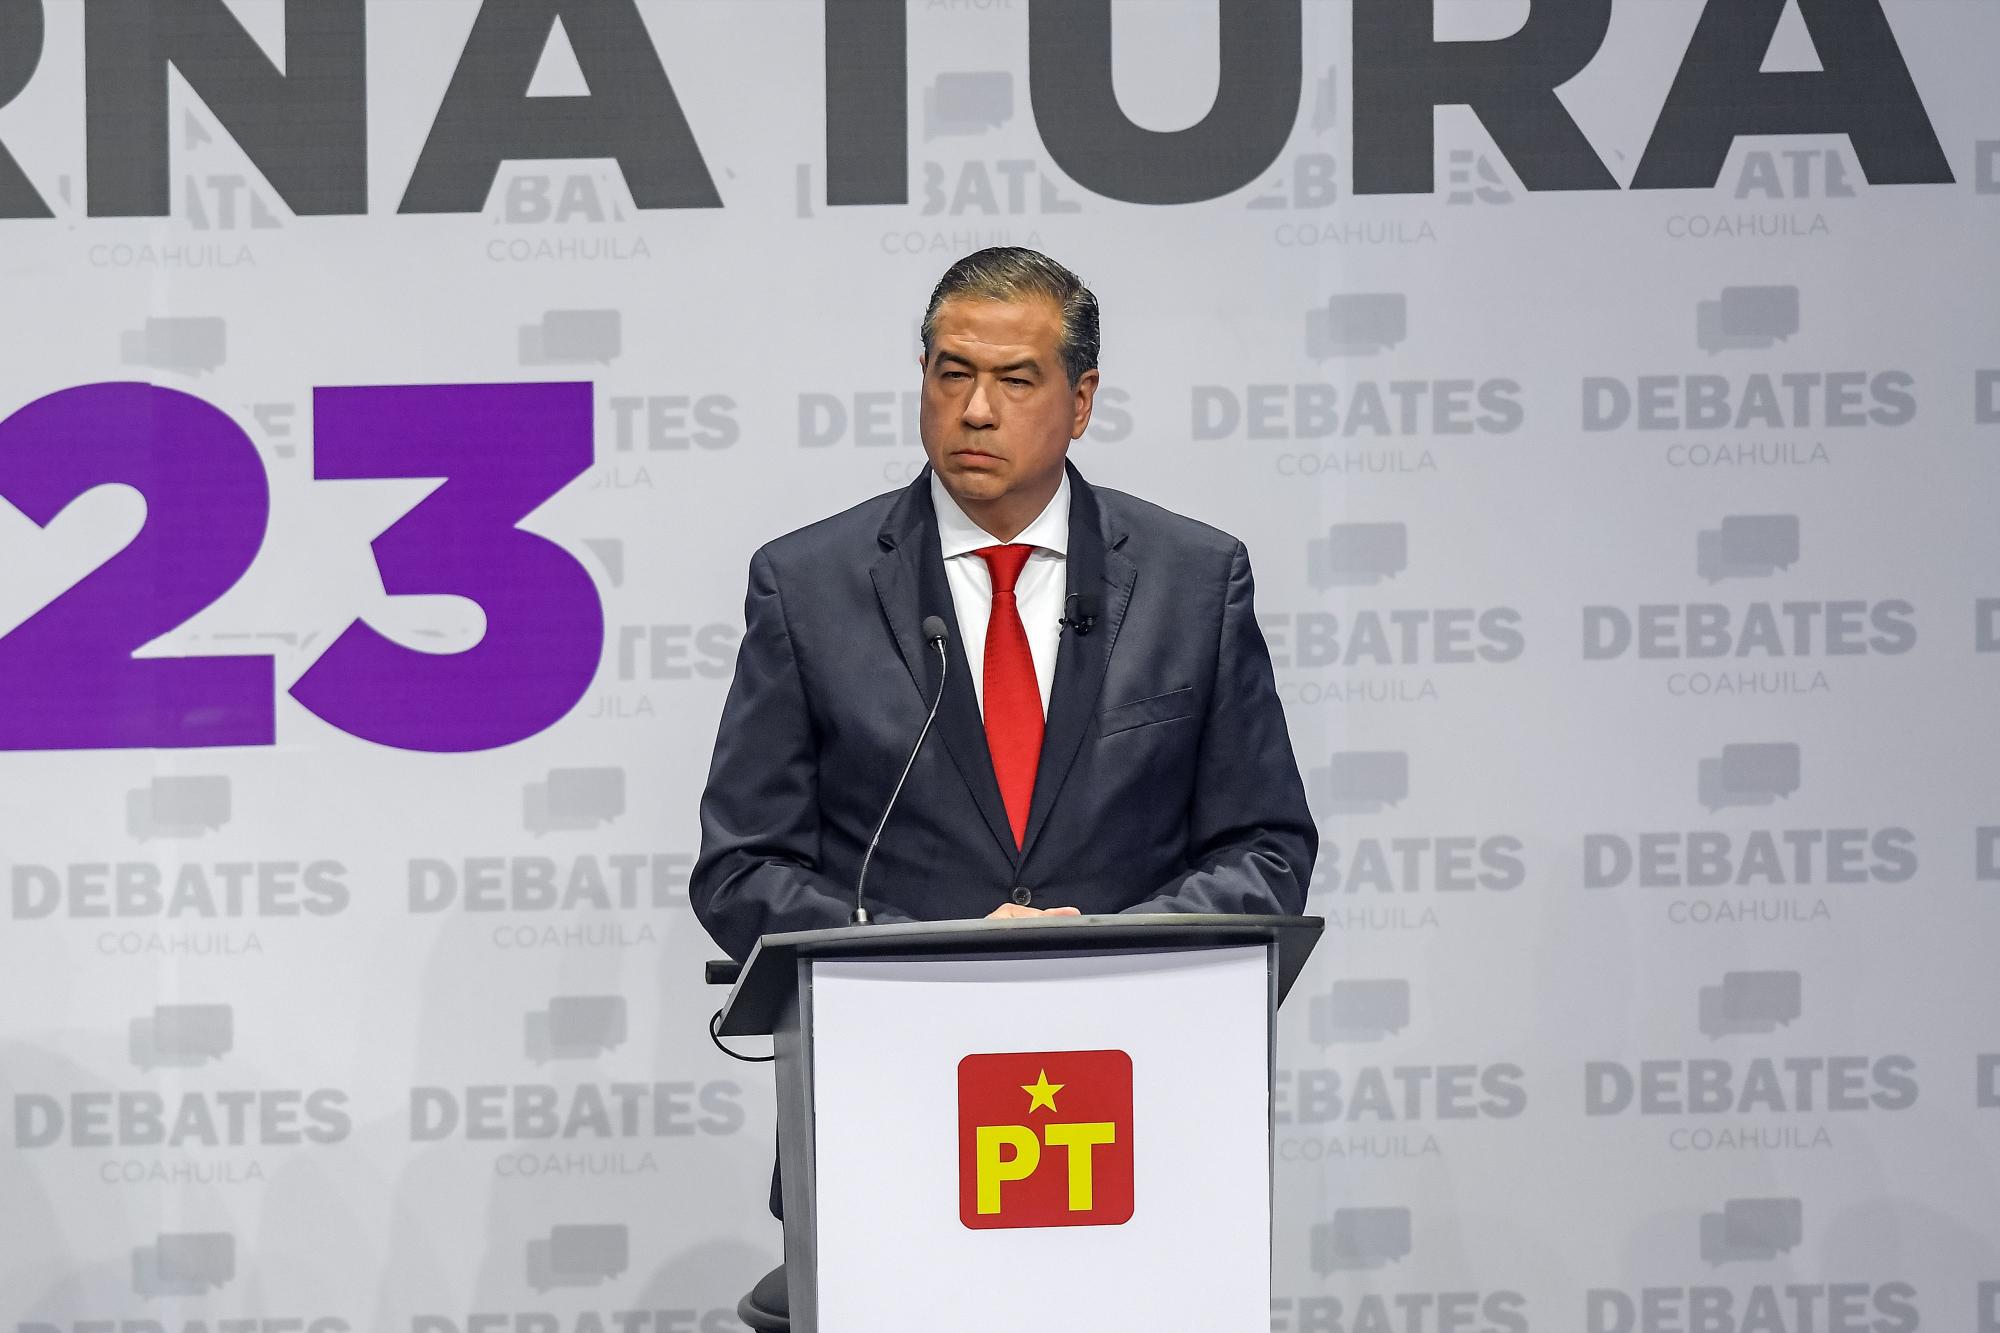 $!Candidatos Coahuila: ¿Qué propuesta de sus oponentes adoptaría?